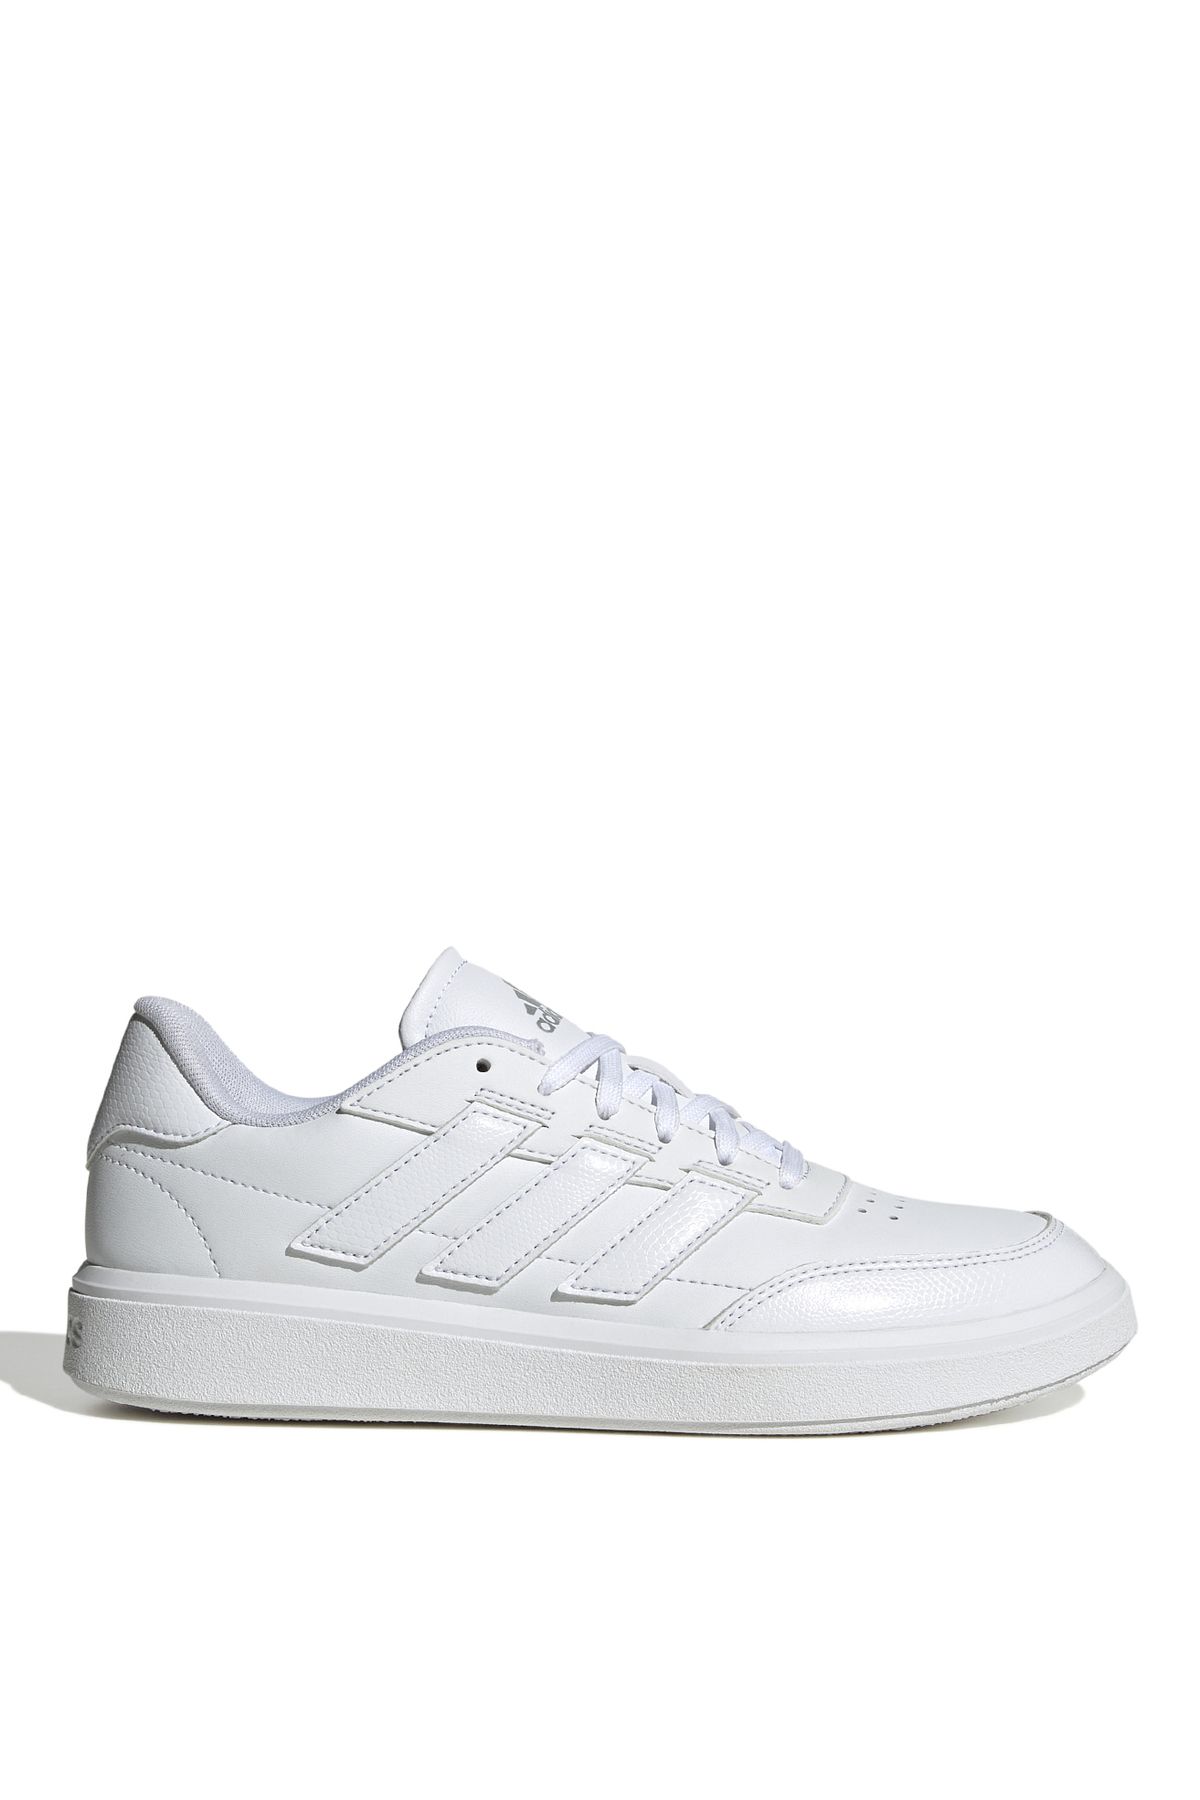 adidas Beyaz Kadın Tenis Ayakkabısı IF6554 COURTBLOCK